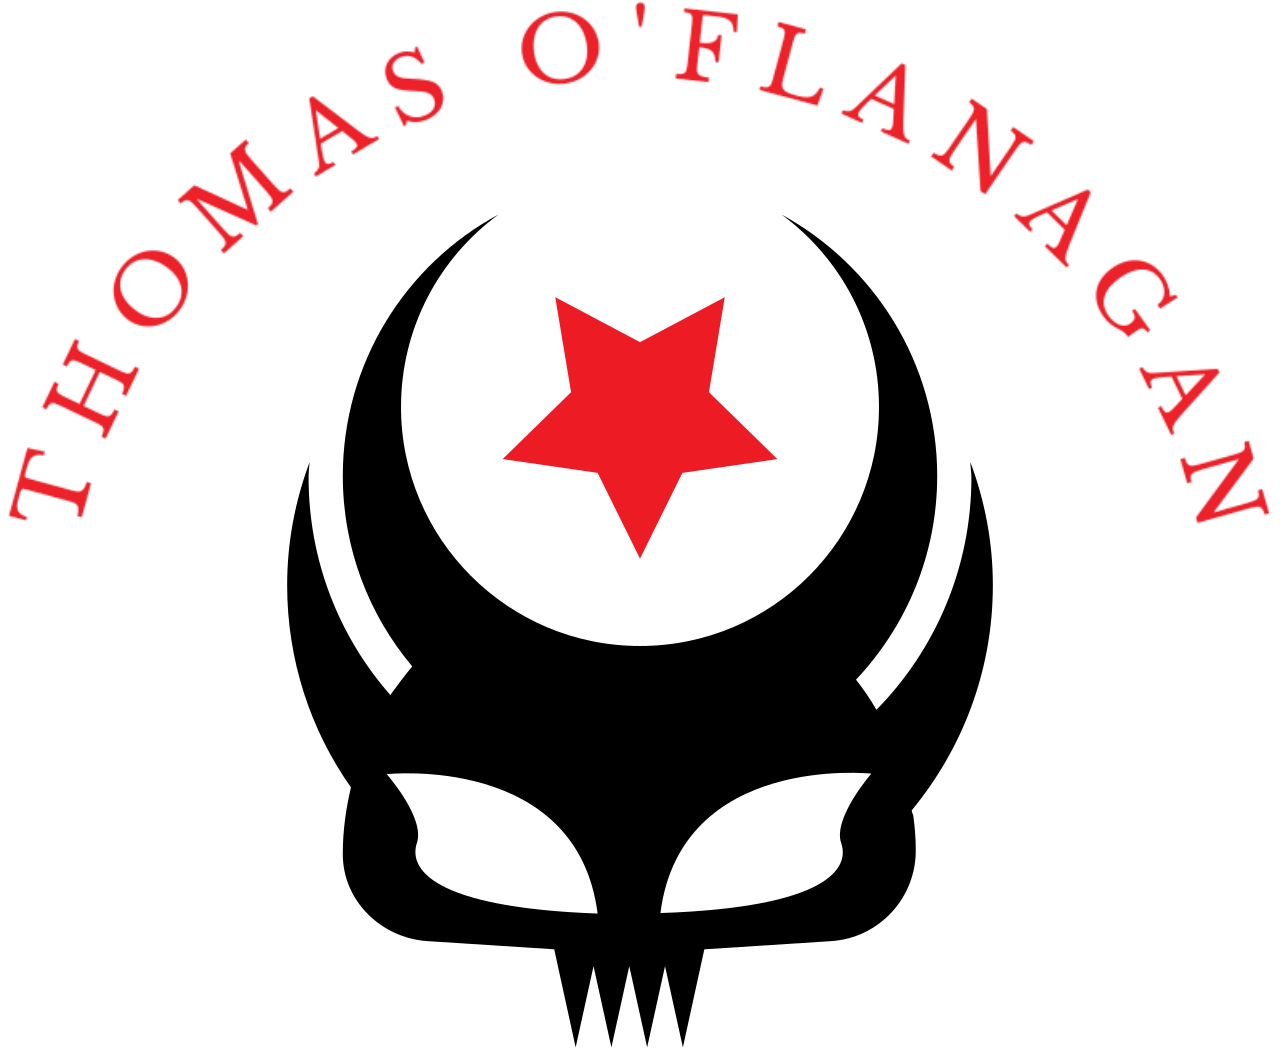 THOMAS O'FLANAGAN's web page